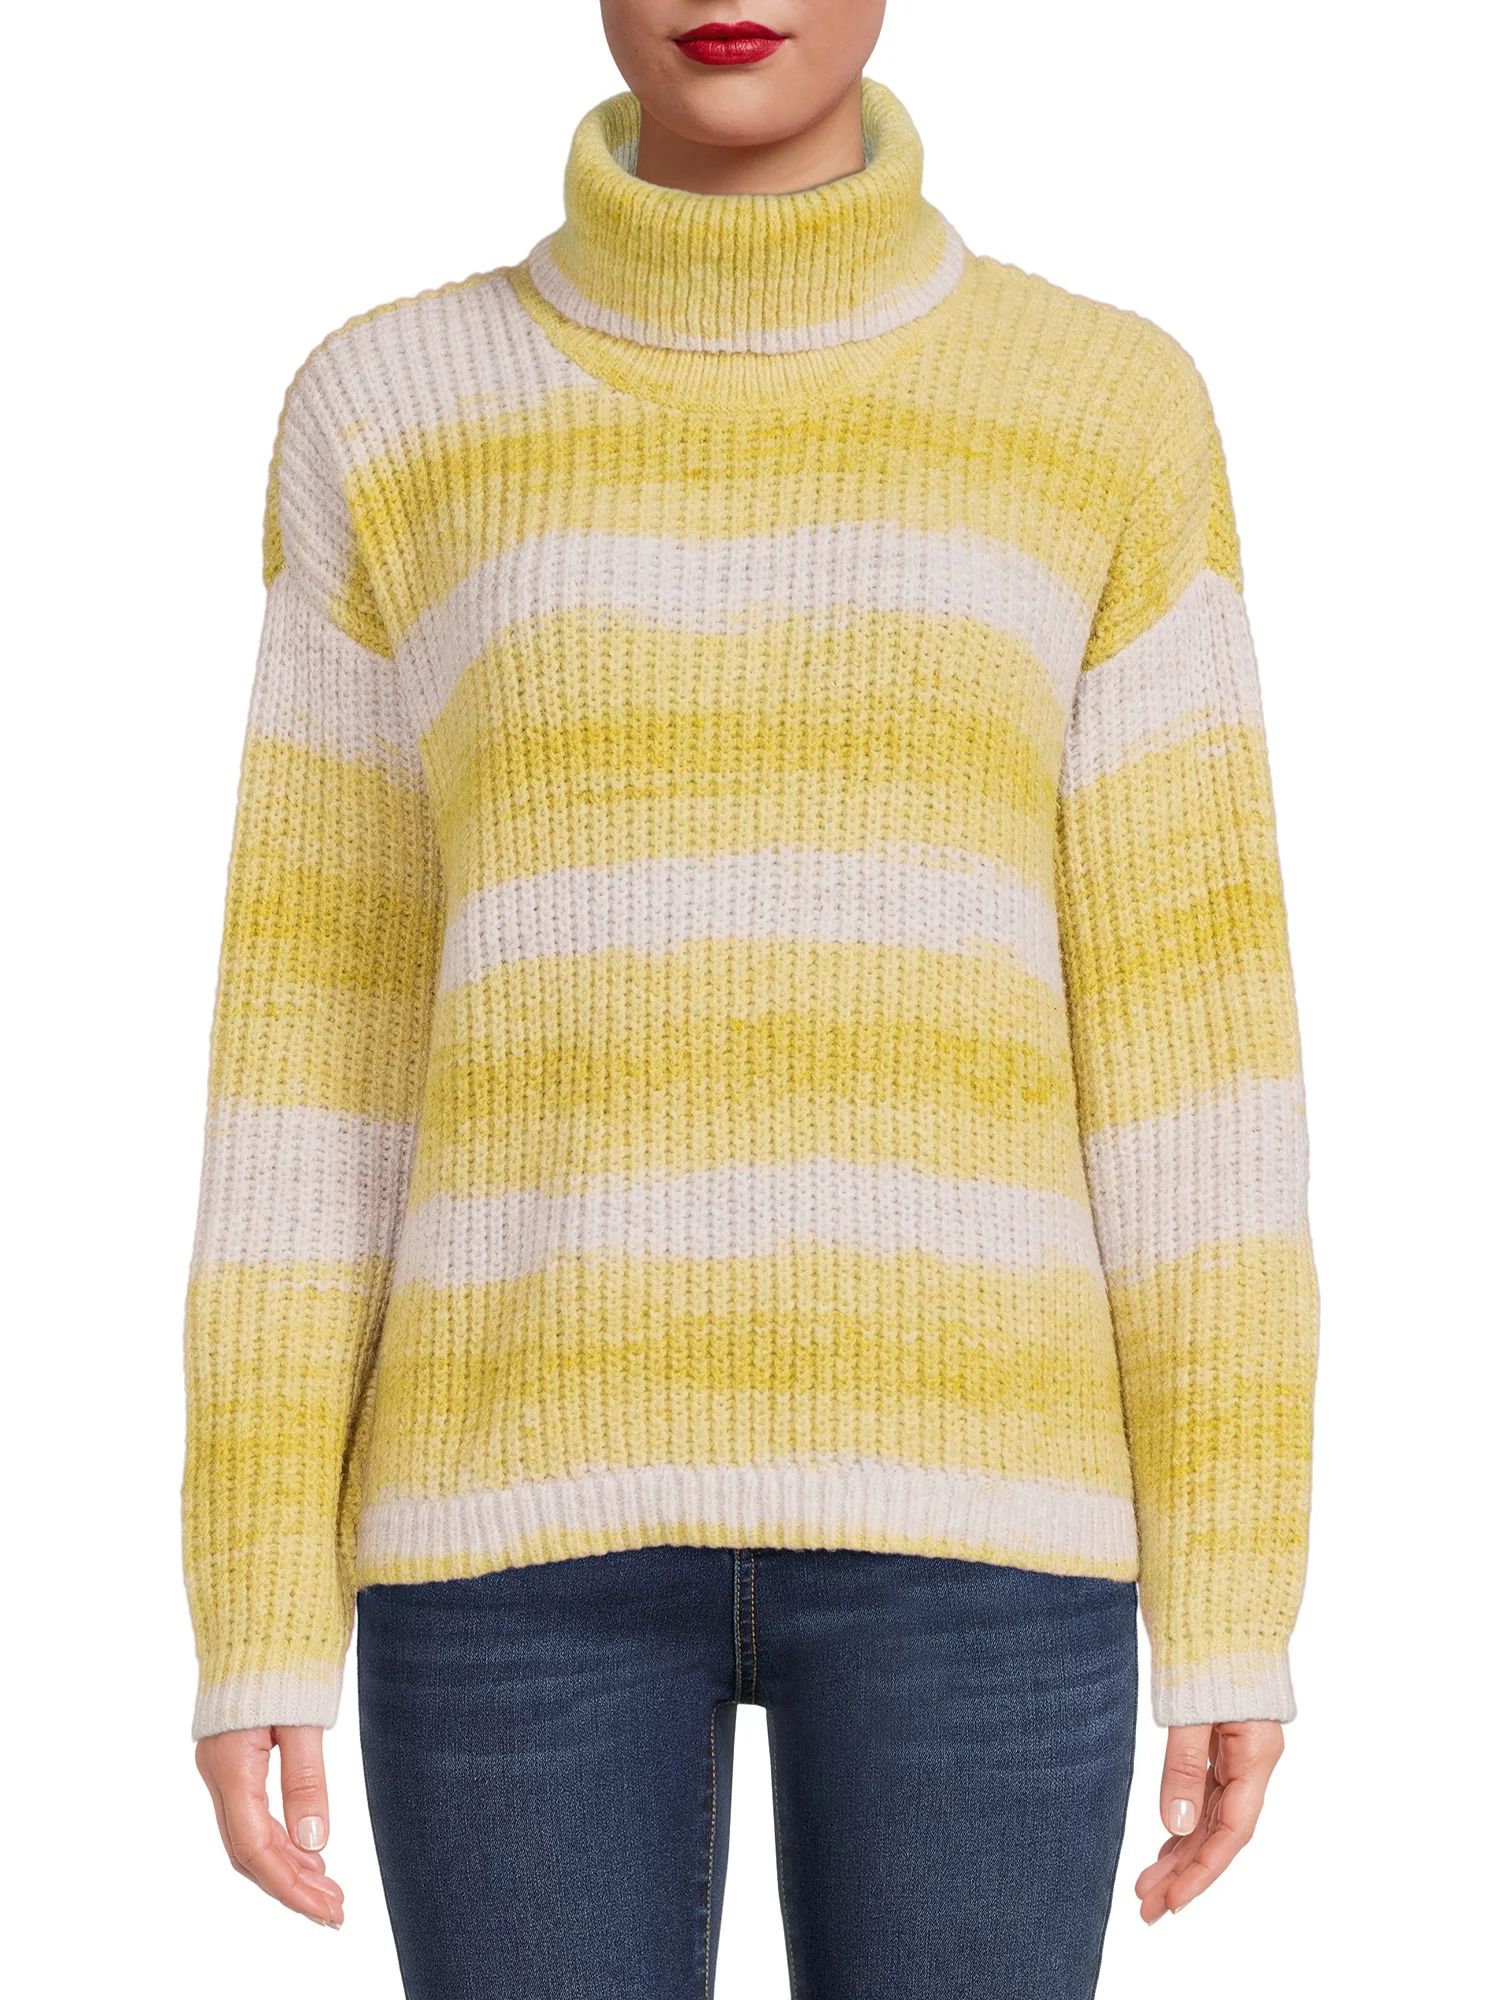 99 Jane Street Women's Space Dye Turtleneck Sweater - Walmart.com | Walmart (US)